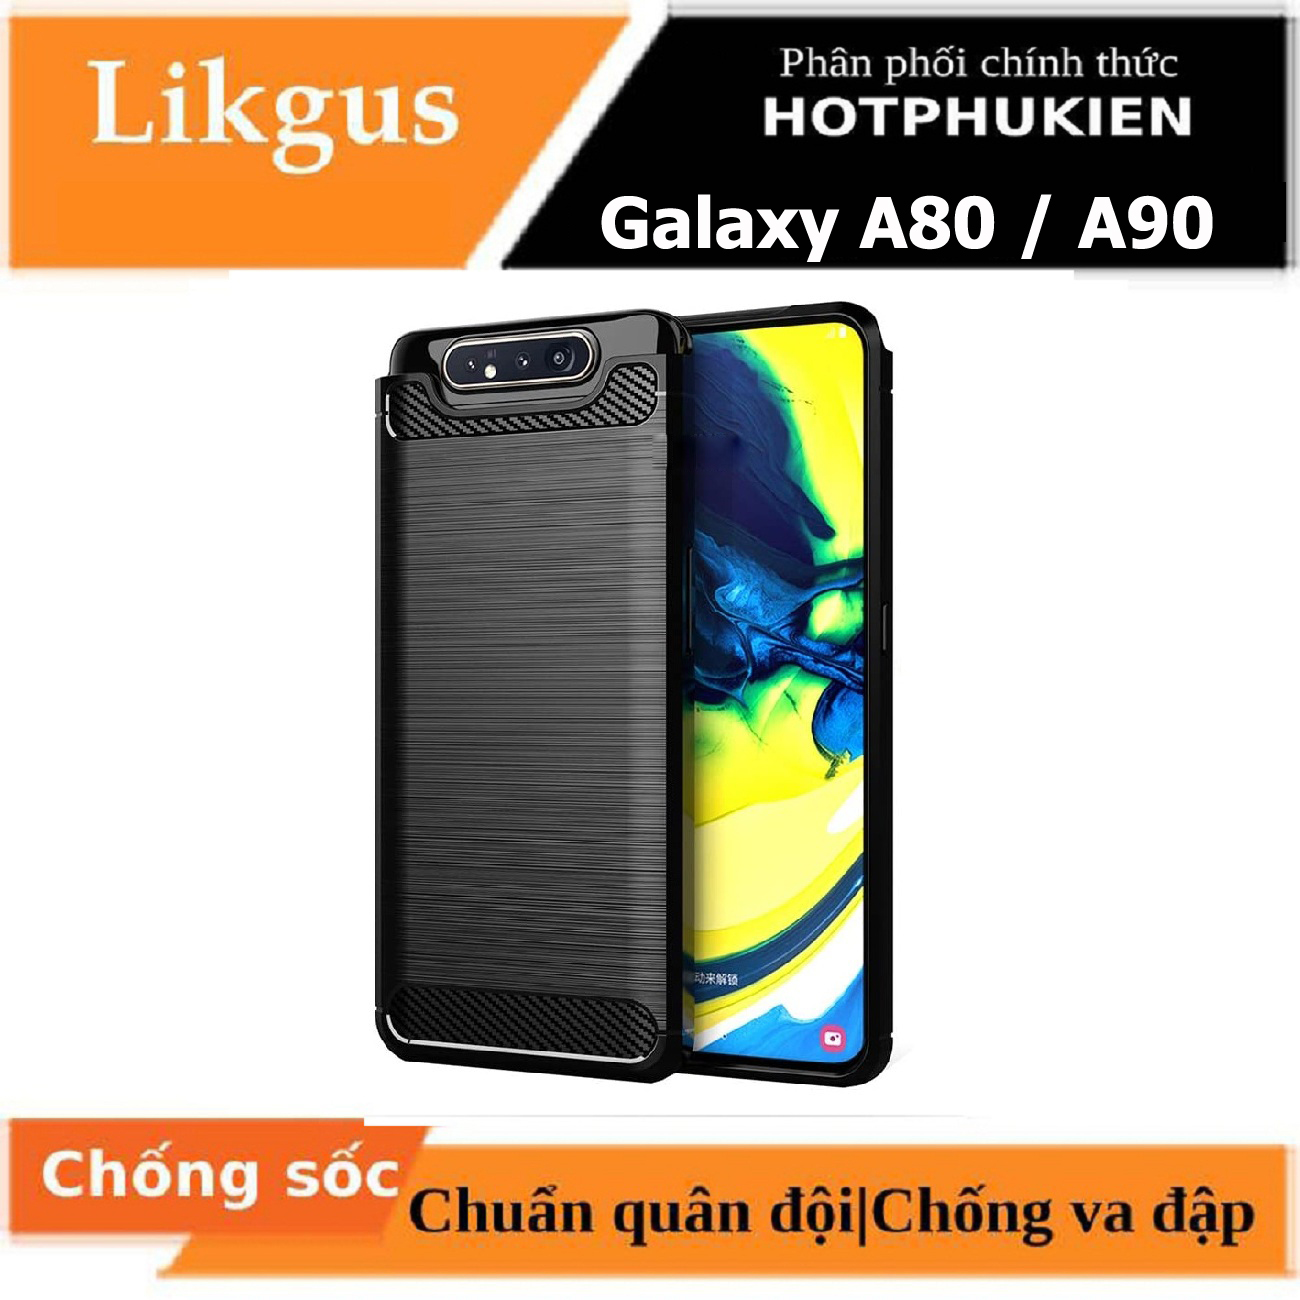 Ốp lưng chống sốc vân kim loại cho Samsung Galaxy A80 / A90 hiệu Likgus (bảo vệ toàn diện, chống va đập)